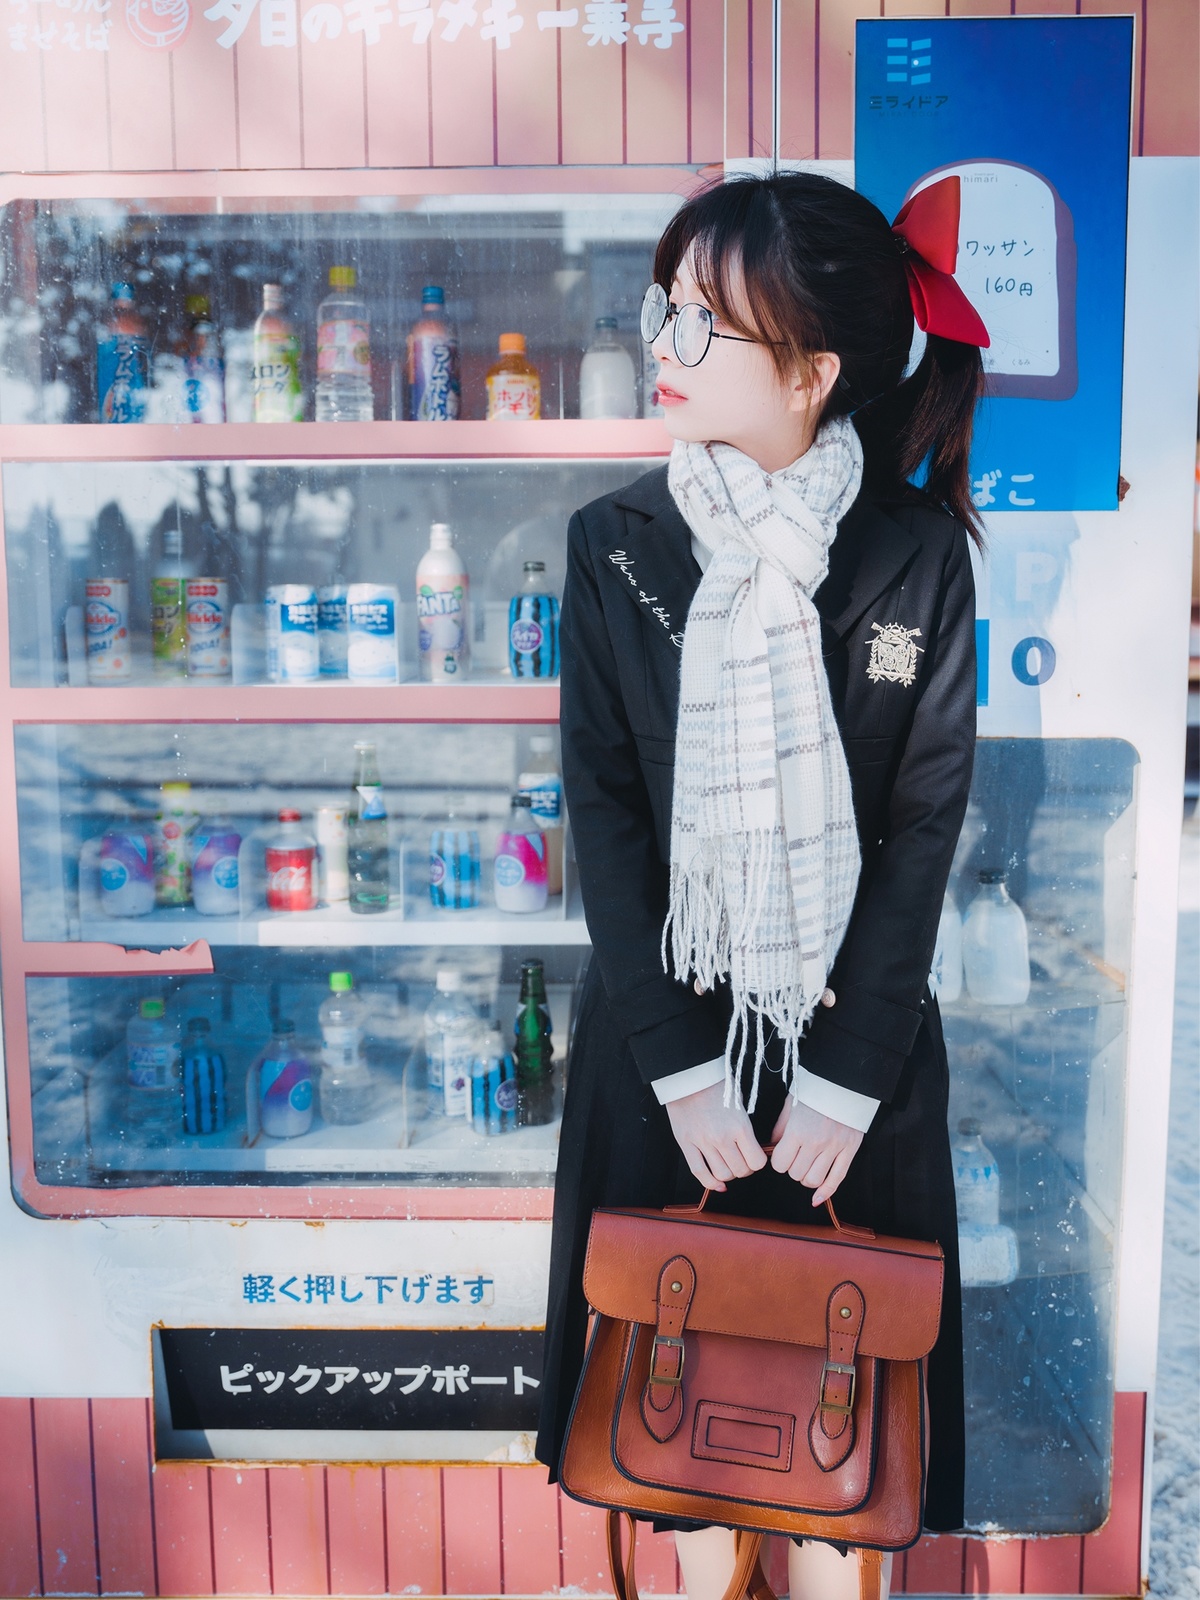 戴眼镜和围巾的年轻女子站在一台自动售货机前